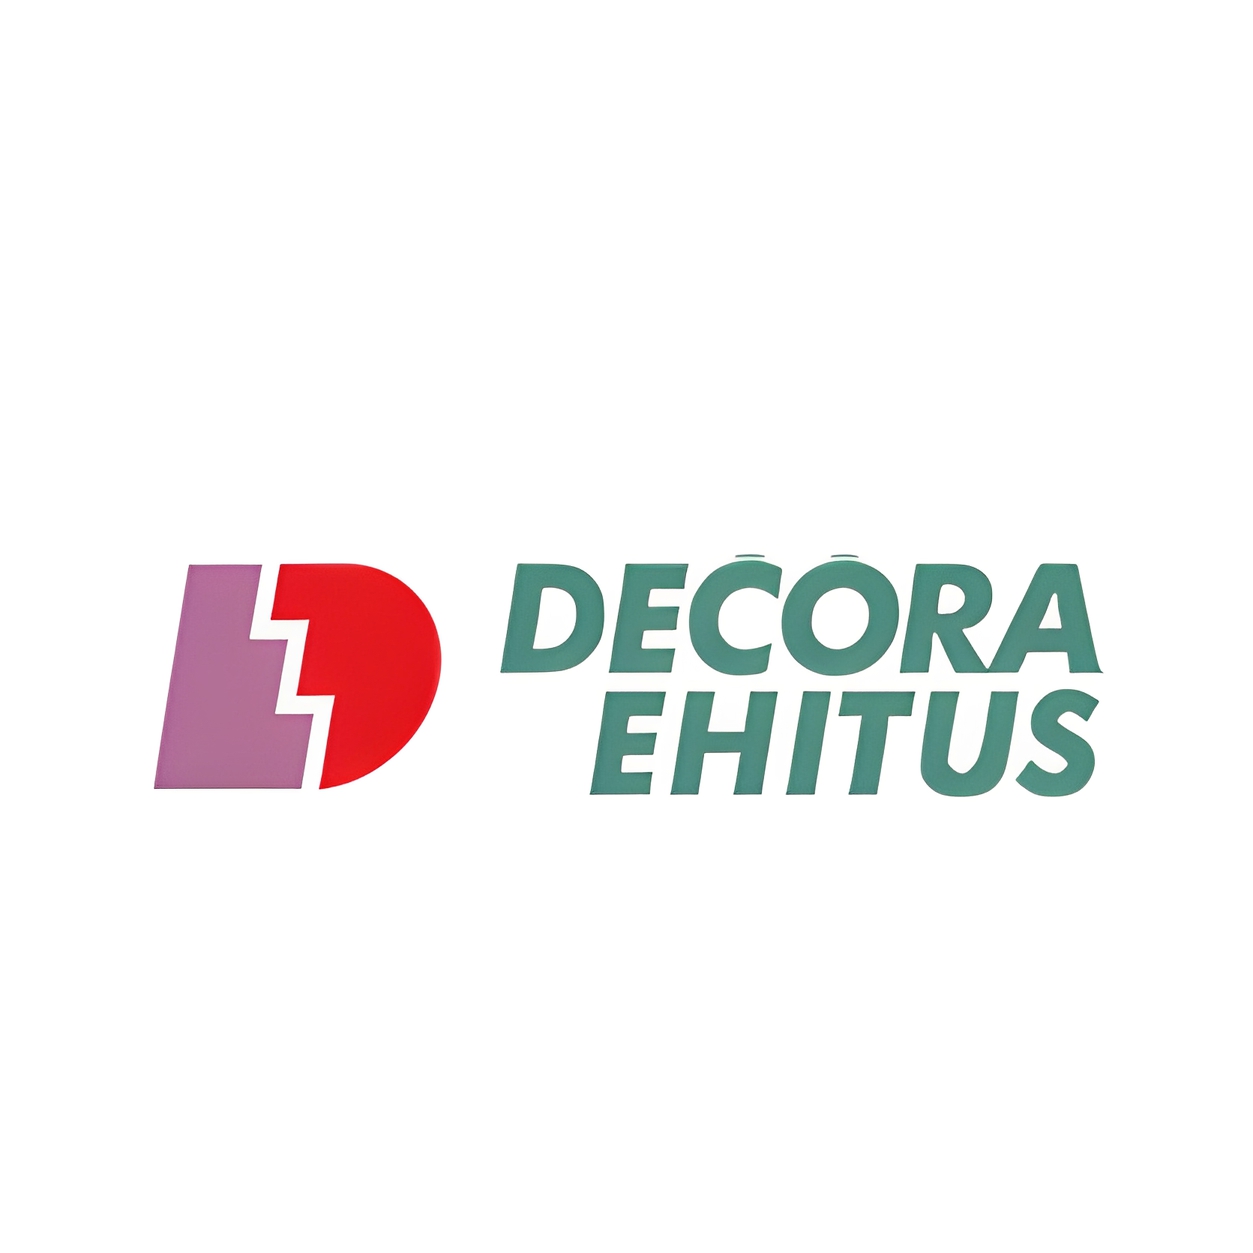 DECORA EHITUS OÜ - DECORA EHITUS - Decora Ehitus